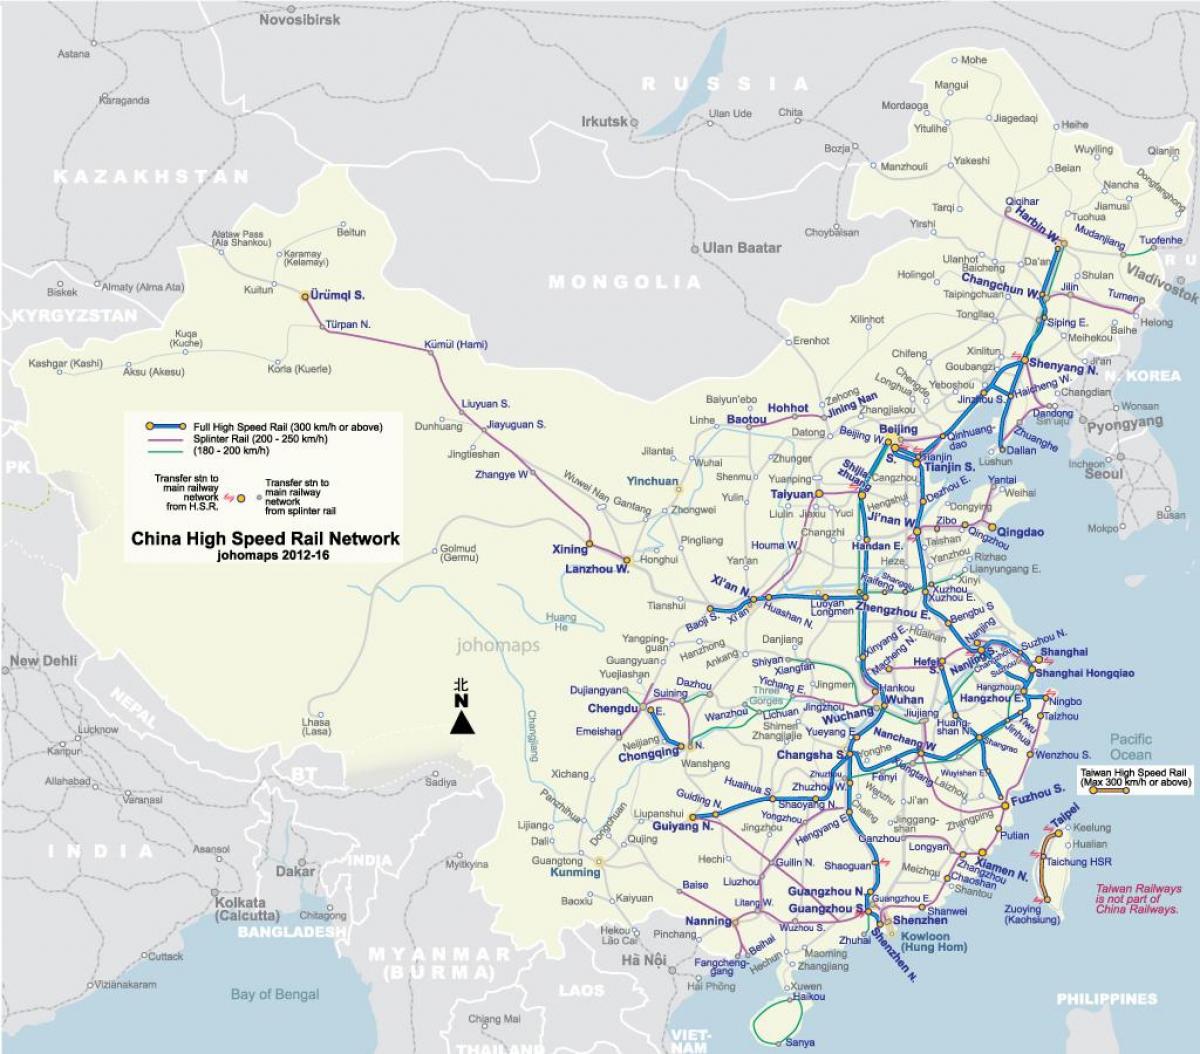 تیز رفتار ریل چین کا نقشہ